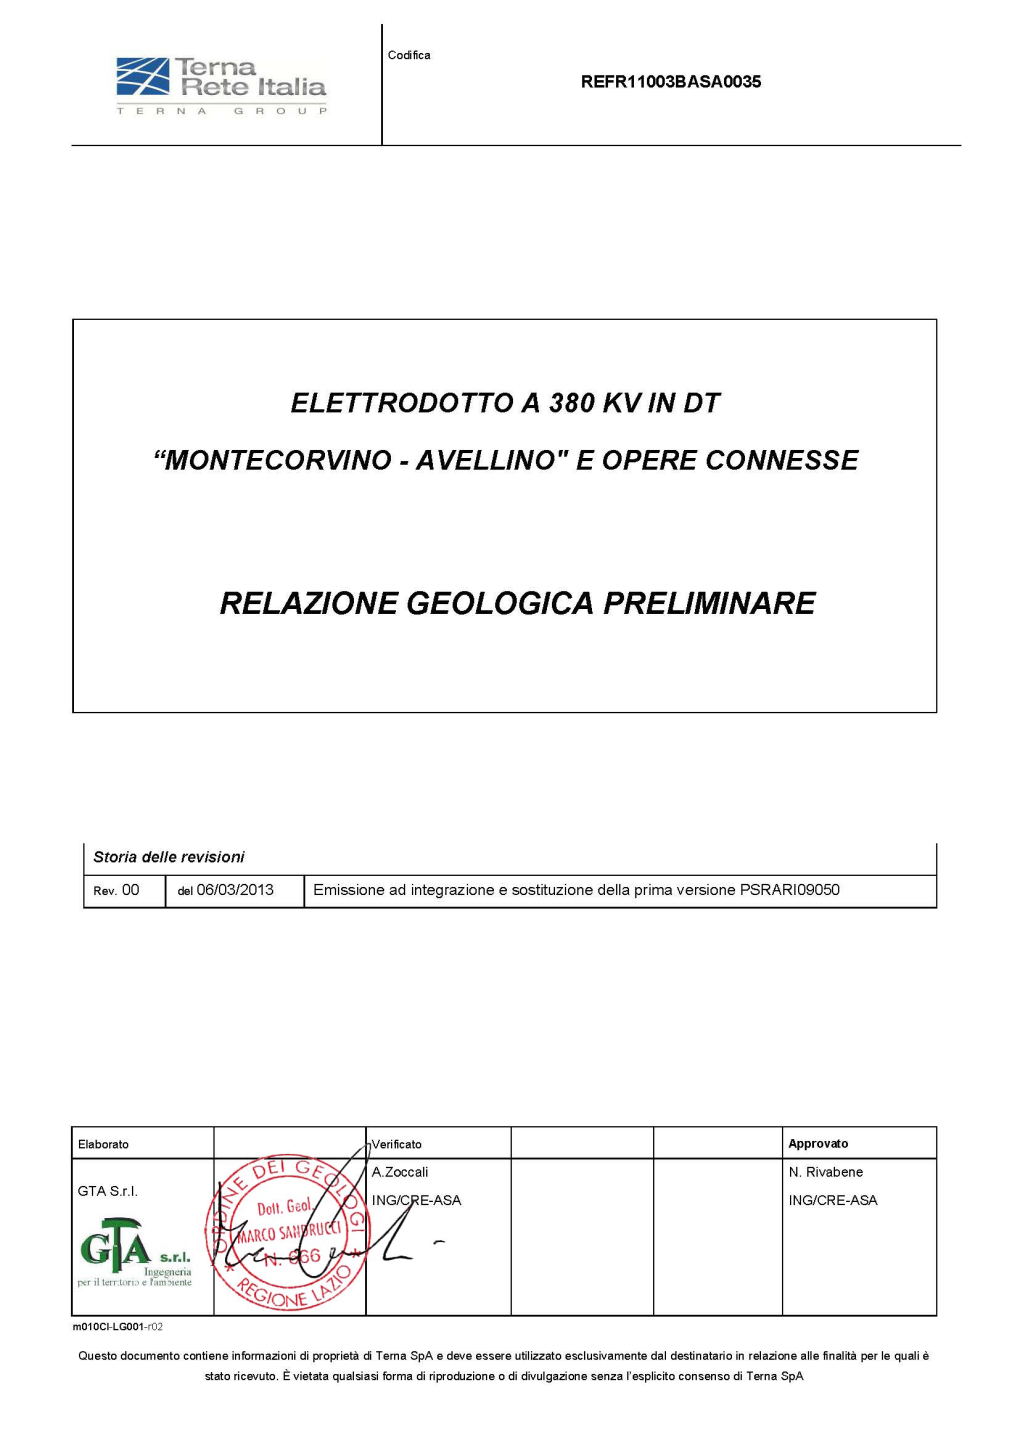 Elettrodotto a 380 Kv in DT “Montecorvino - Avellino" E REFR11003BASA0035 Opere Connesse Rev